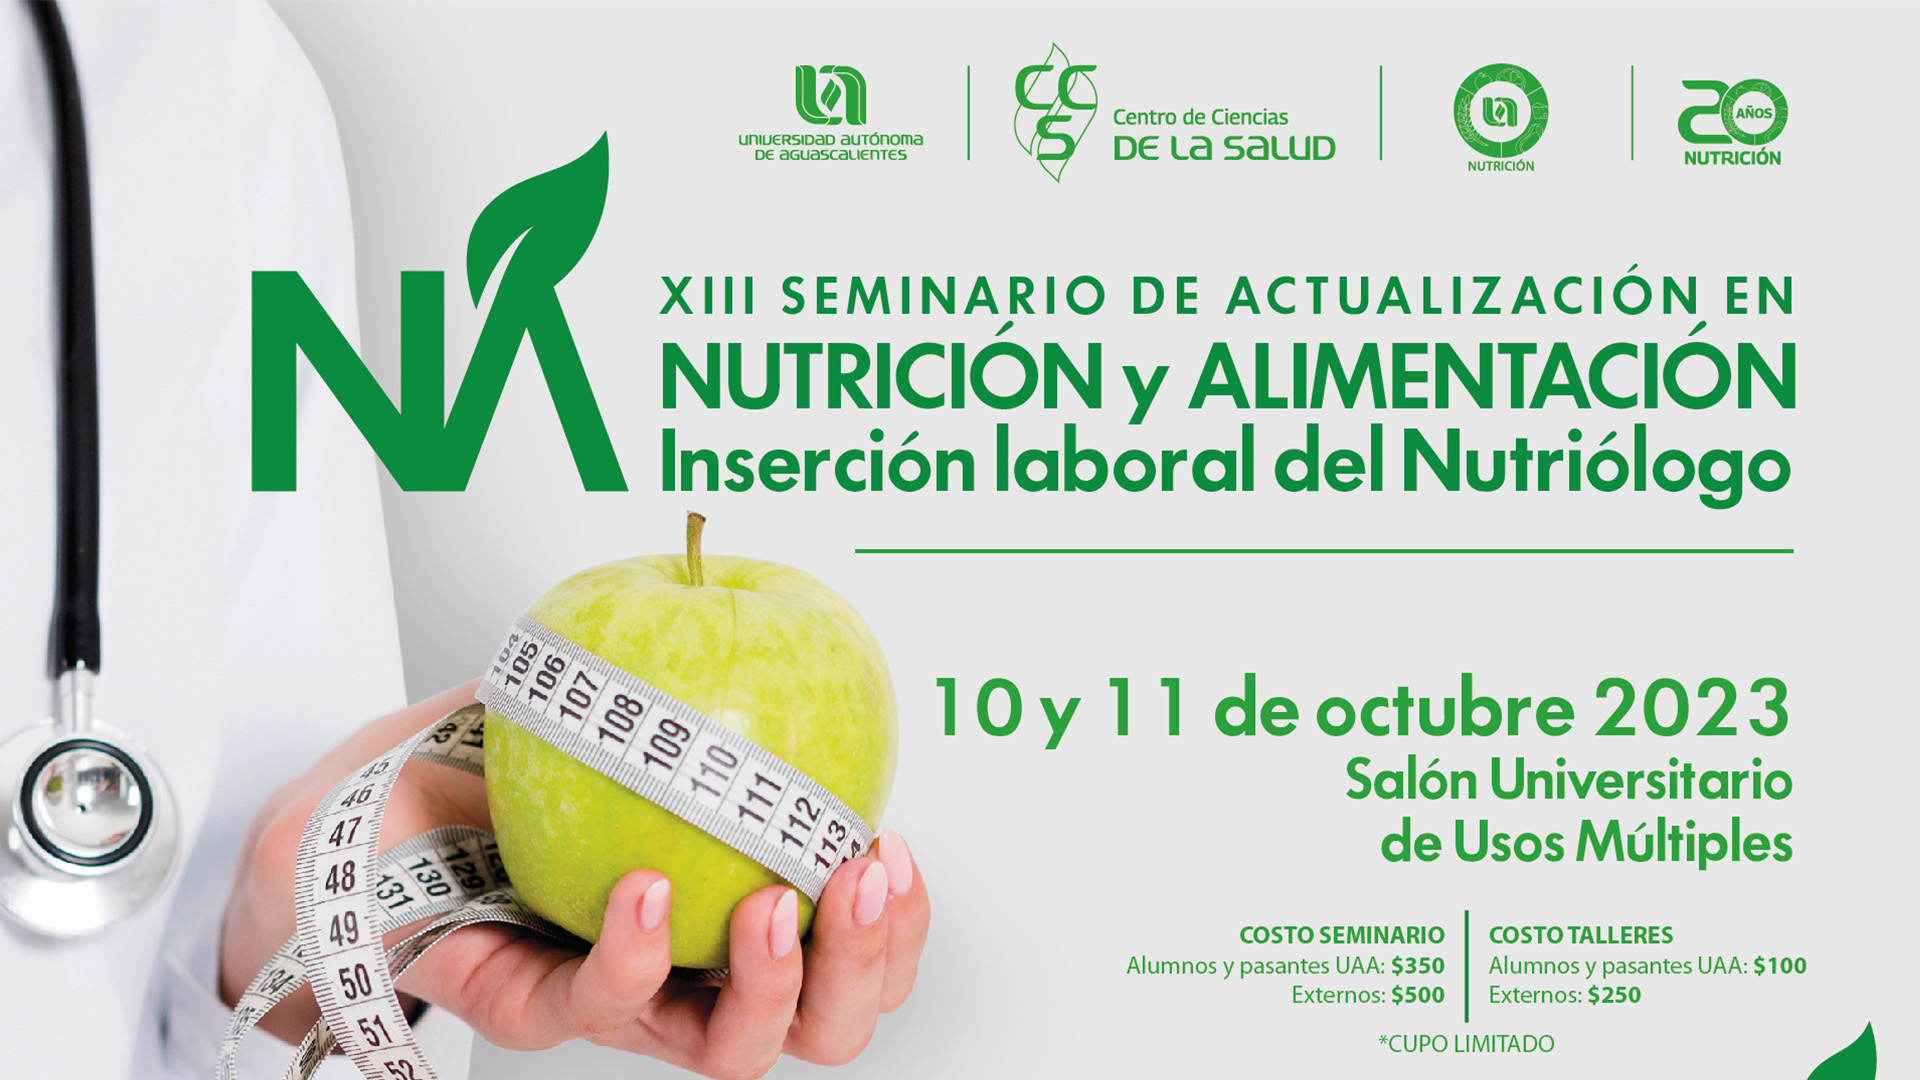 XIII SEMINARIO DE ACTUALIZACIÒN EN NUTRICIÒN Y ALIMENTACIÒN “INSERCIÒN LABORAL DEL NUTRIÒLOGO”